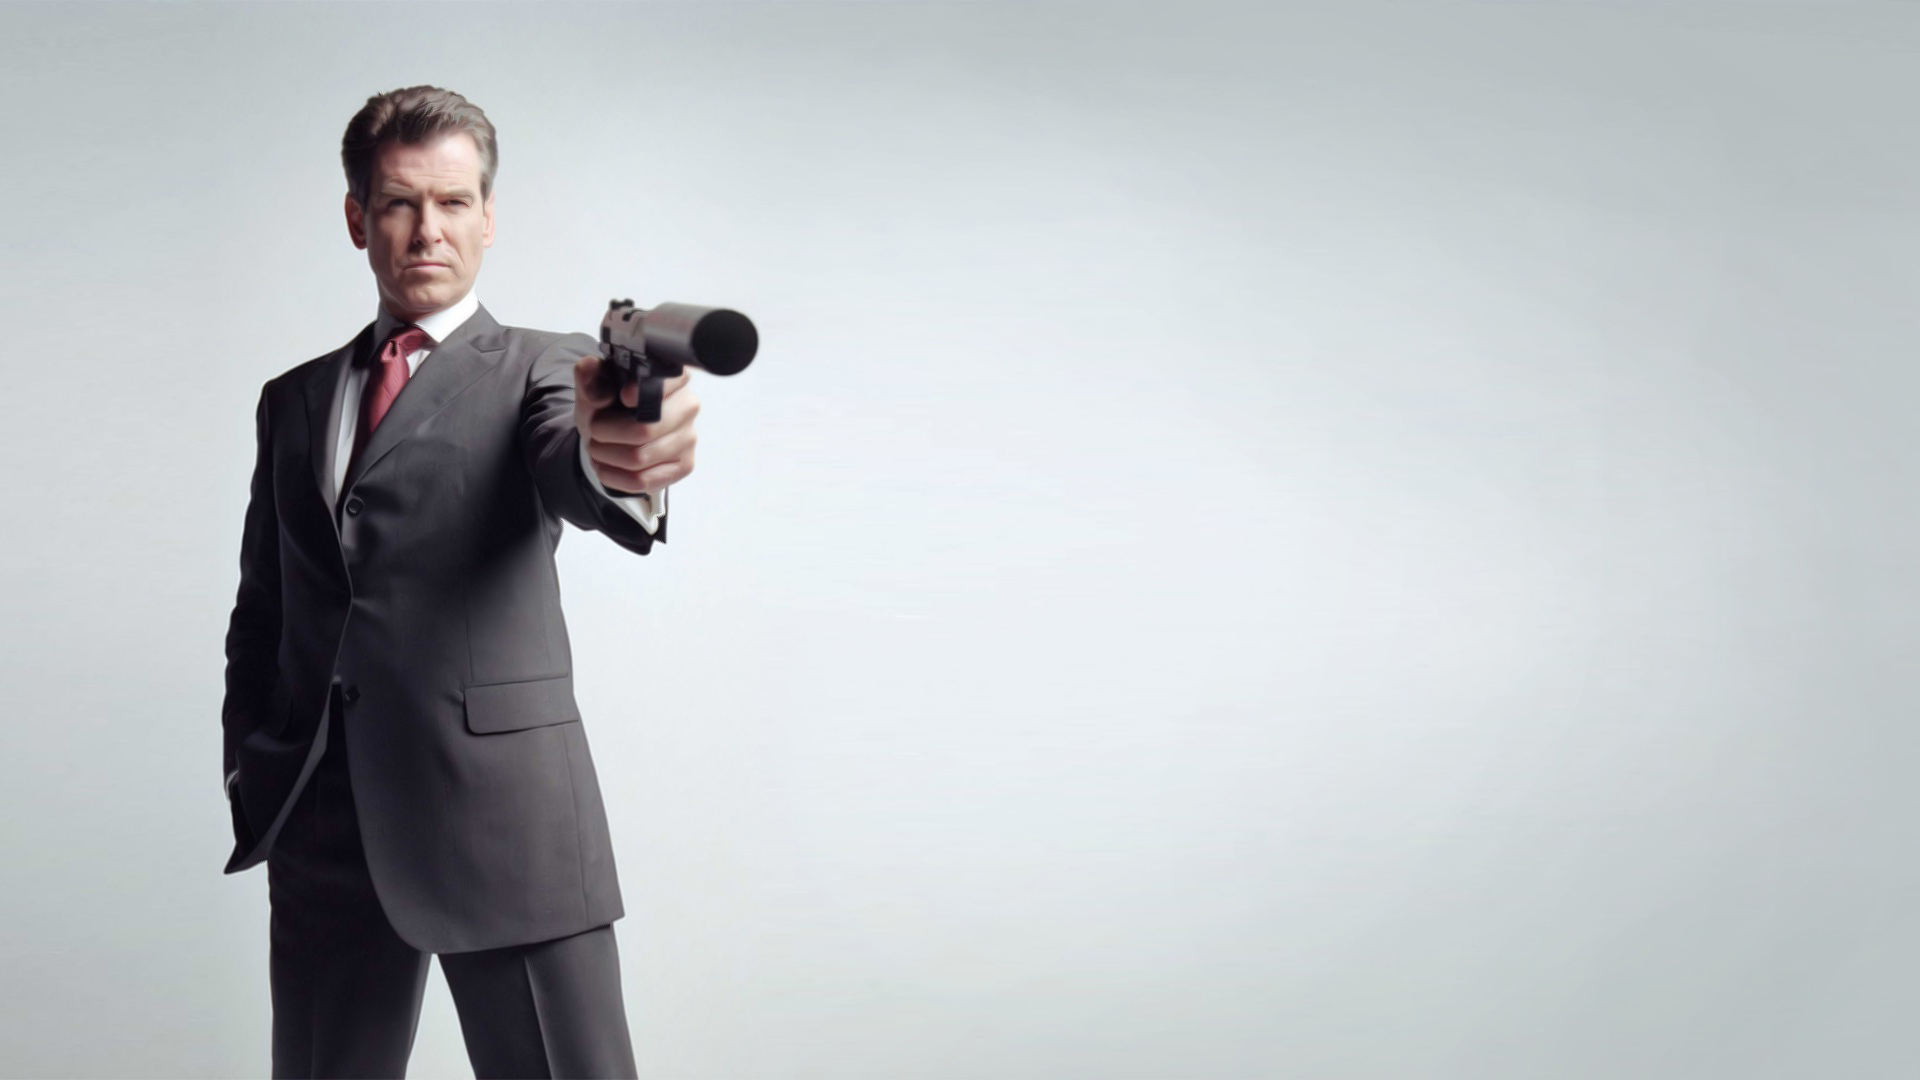 Desktop Wallpaper For Background James Bond Image